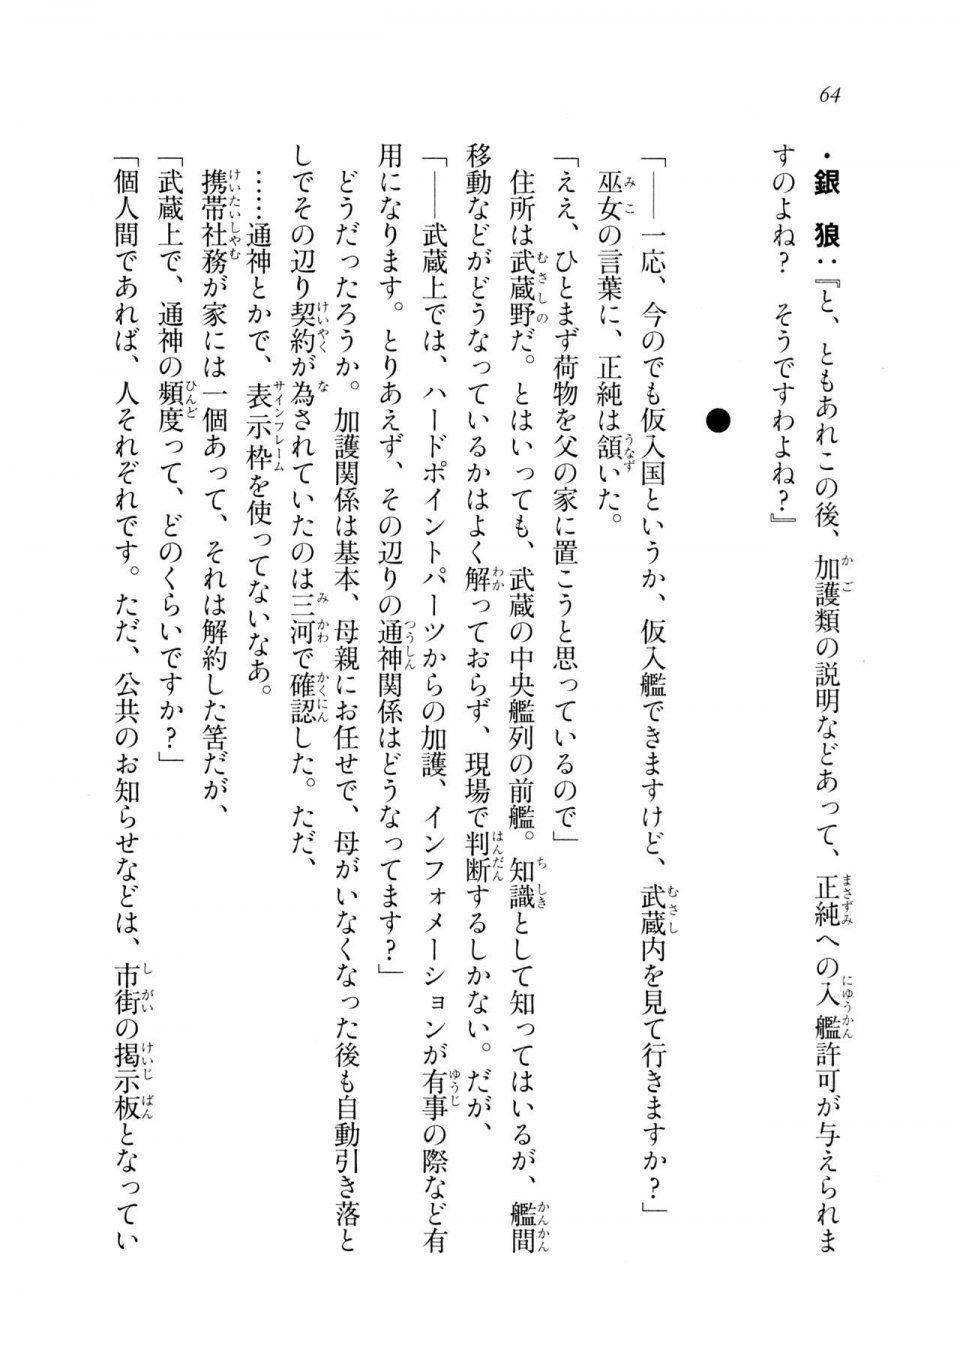 Kyoukai Senjou no Horizon LN Sidestory Vol 2 - Photo #62